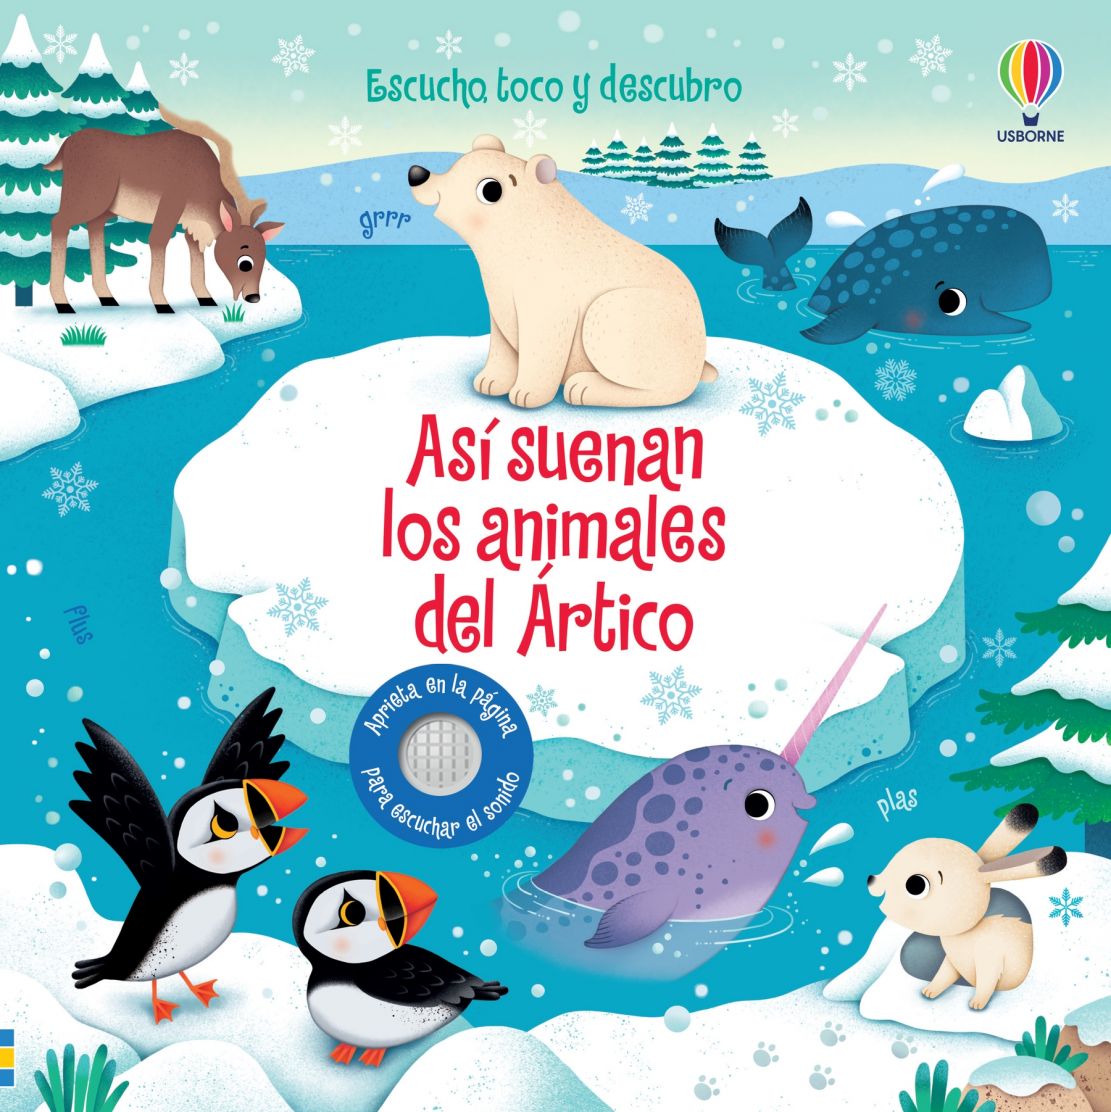 Así suenan los animales del Ártico - Libro musical